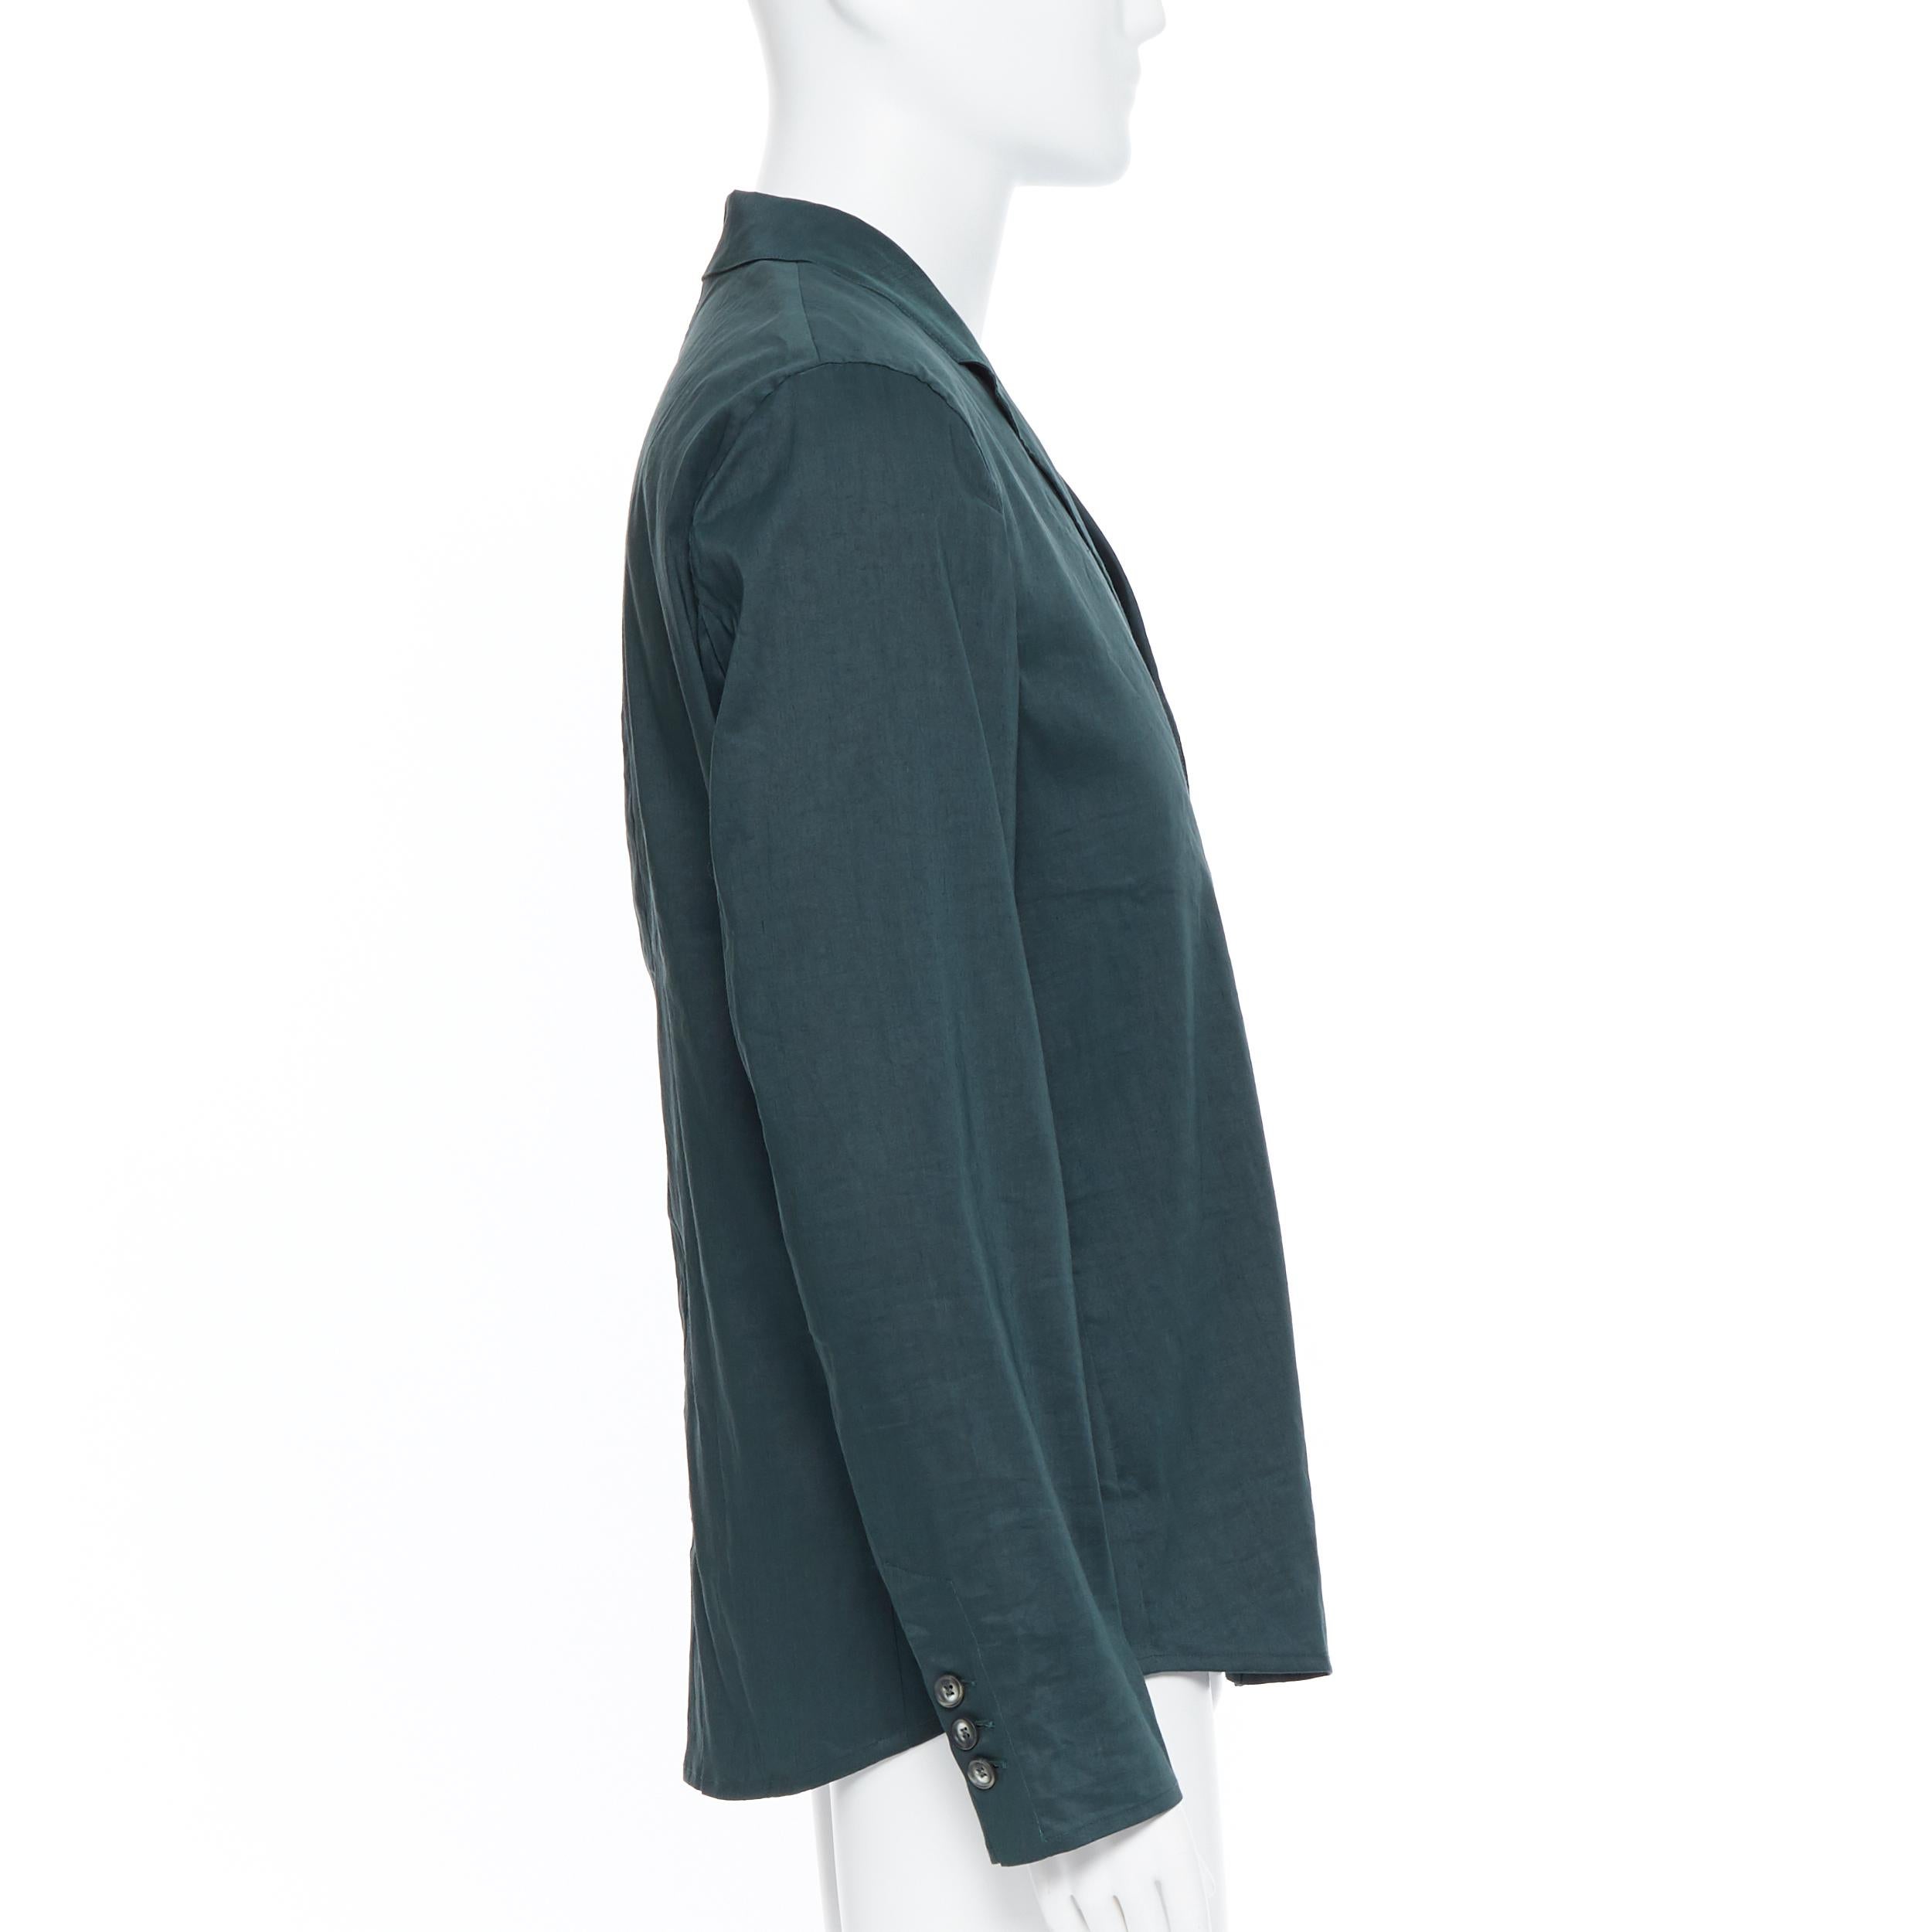 Men's new LA PERLA dark green linen blend notched collar button front pyjama shirt XL